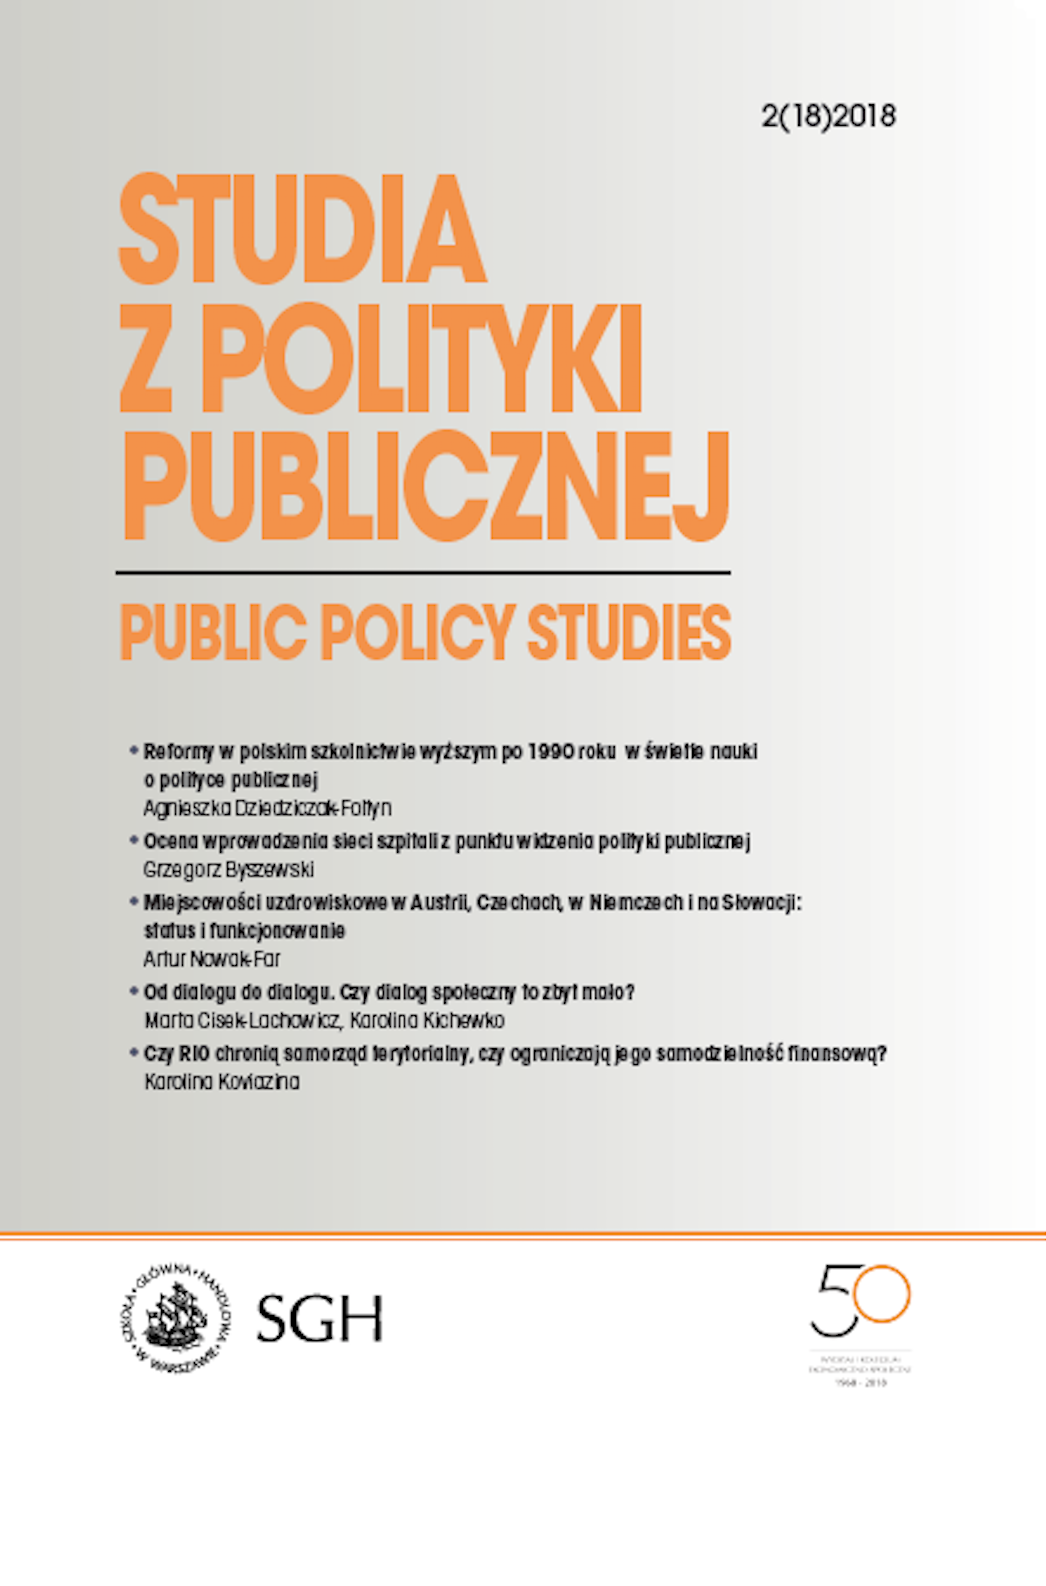 Znaczenie konsultacji społecznych w formułowaniu polityk publicznych Unii Europejskiej